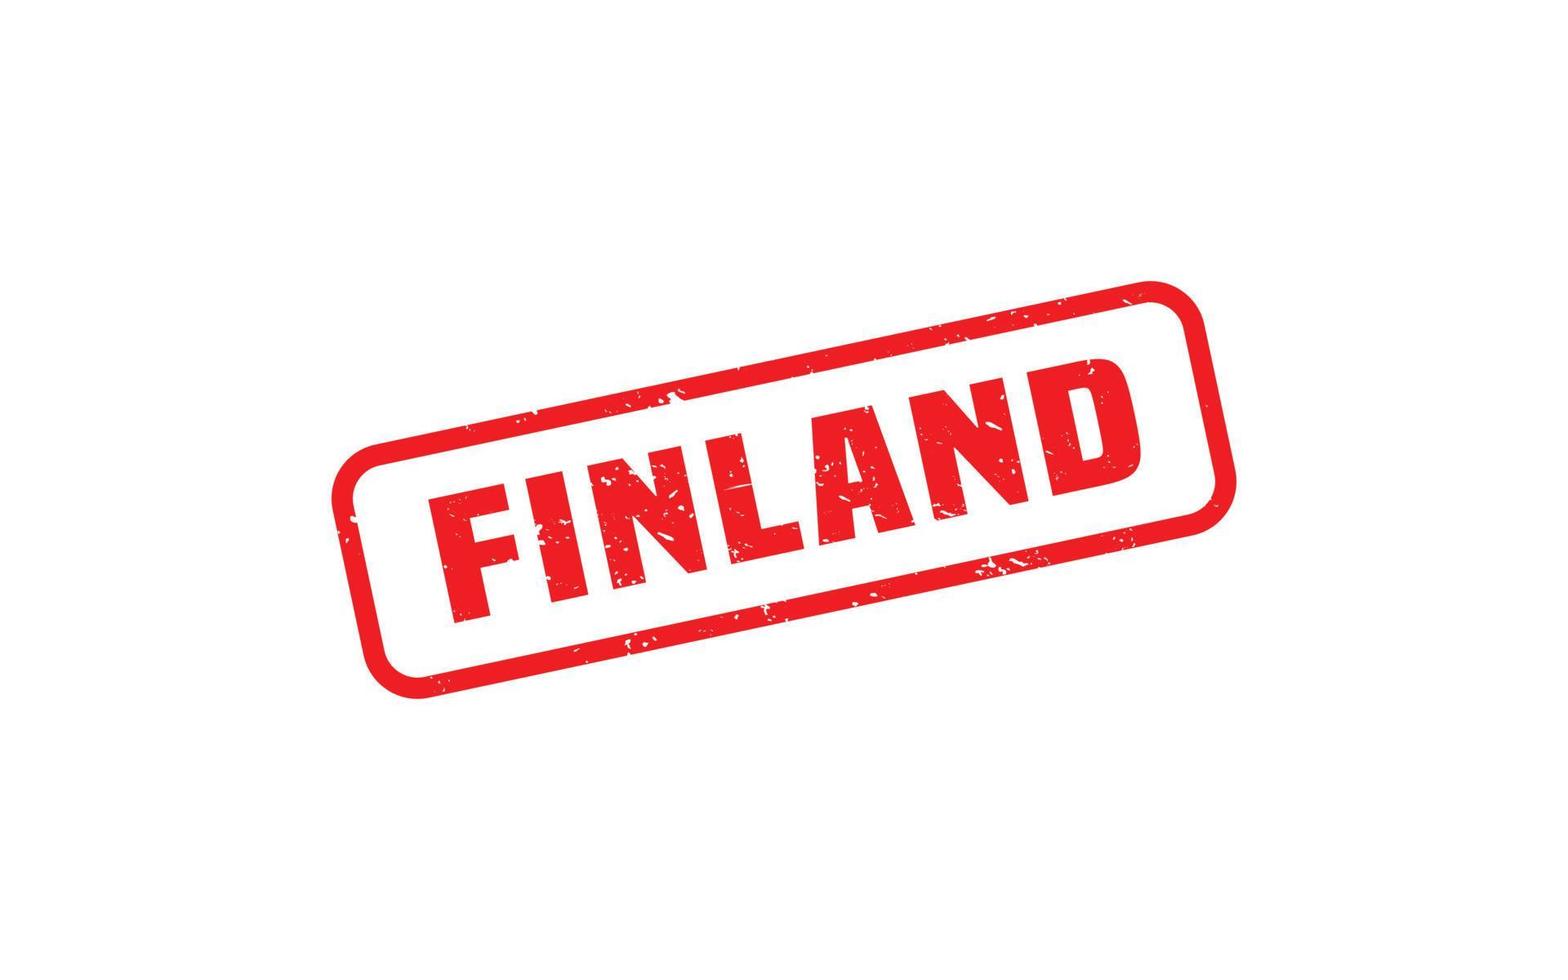 Finnland Stempelgummi mit Grunge-Stil auf weißem Hintergrund vektor